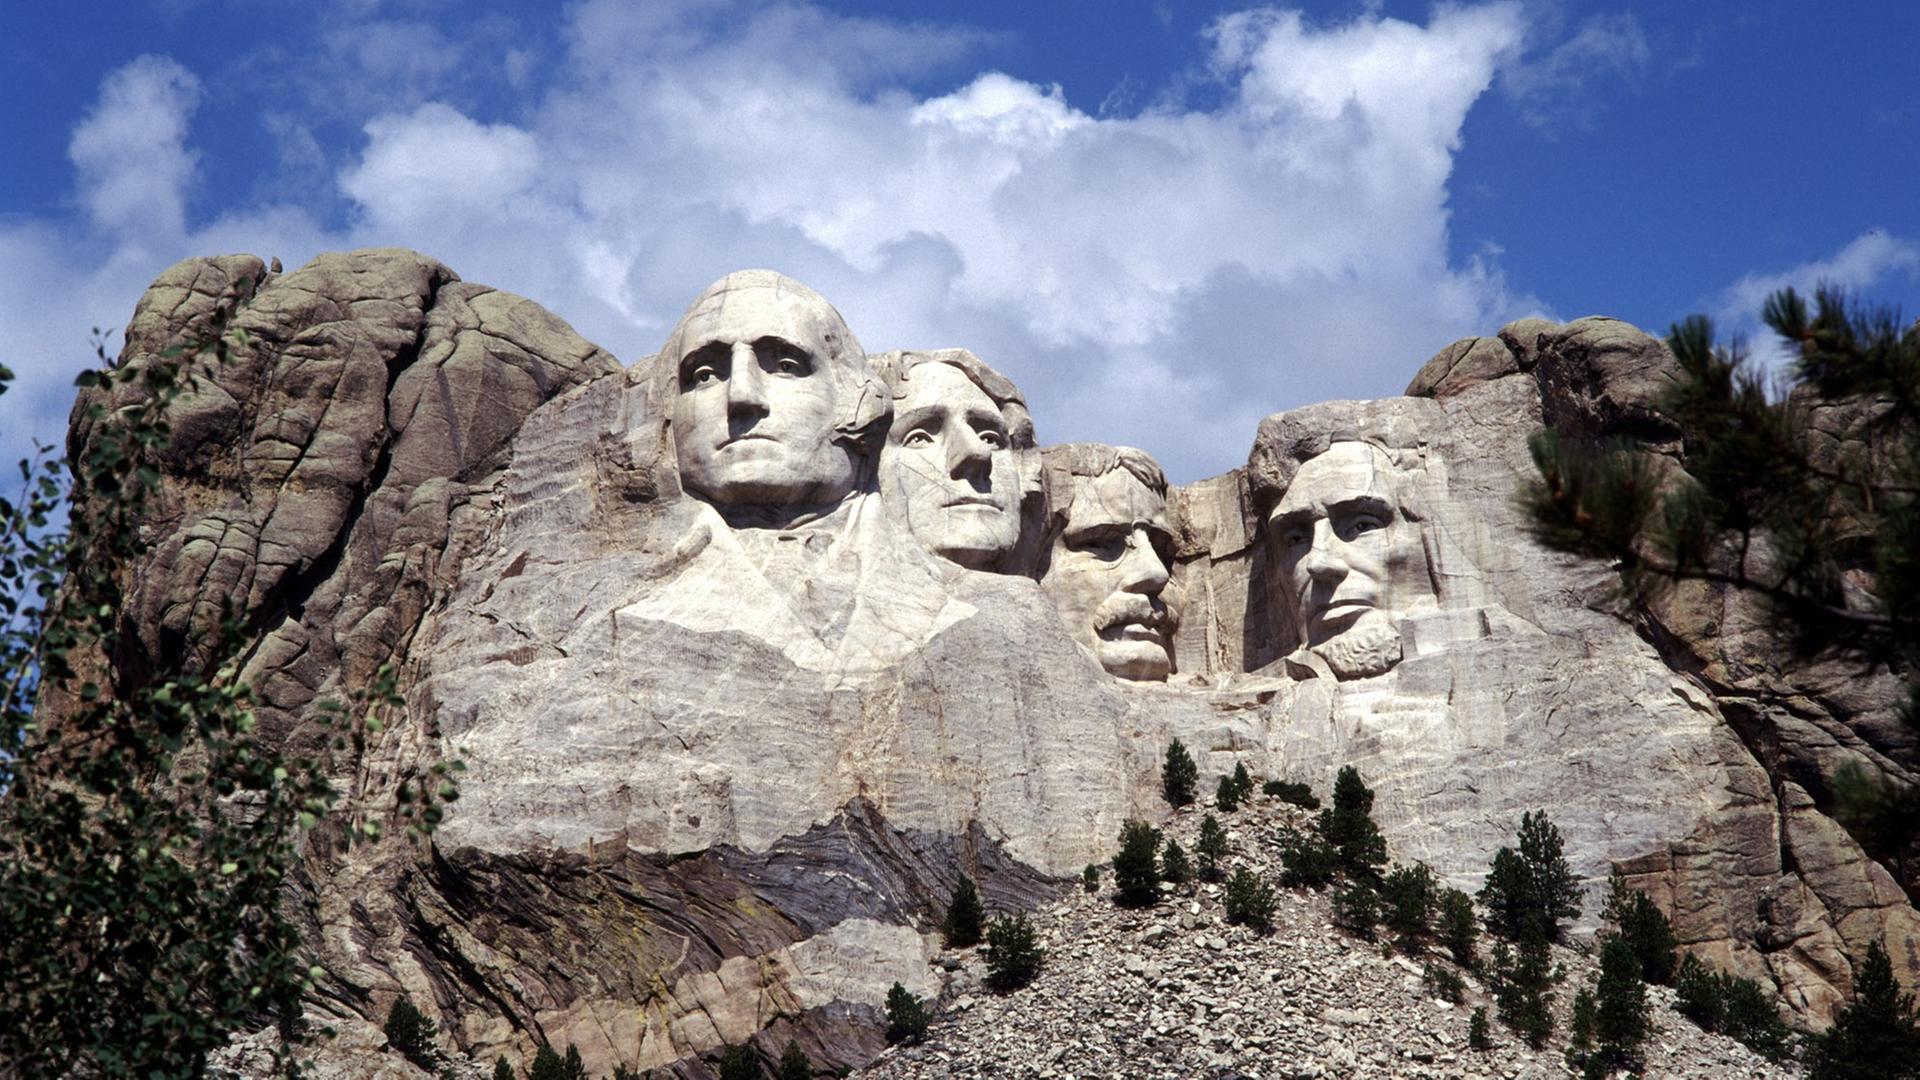 Das Mount Rushmore National Memorial in den Black Hills im US-Bundesstaat South Dakota. Aufnahme von 2006. Die Erinnerungsstätte mit den Büsten der US-Präsidenten (l-r) George Washington, Thomas Jefferson, Theodore Roosevelt und Abraham Lincoln wurde in den Jahren 1927-1941 von G. Borglum gestaltet.